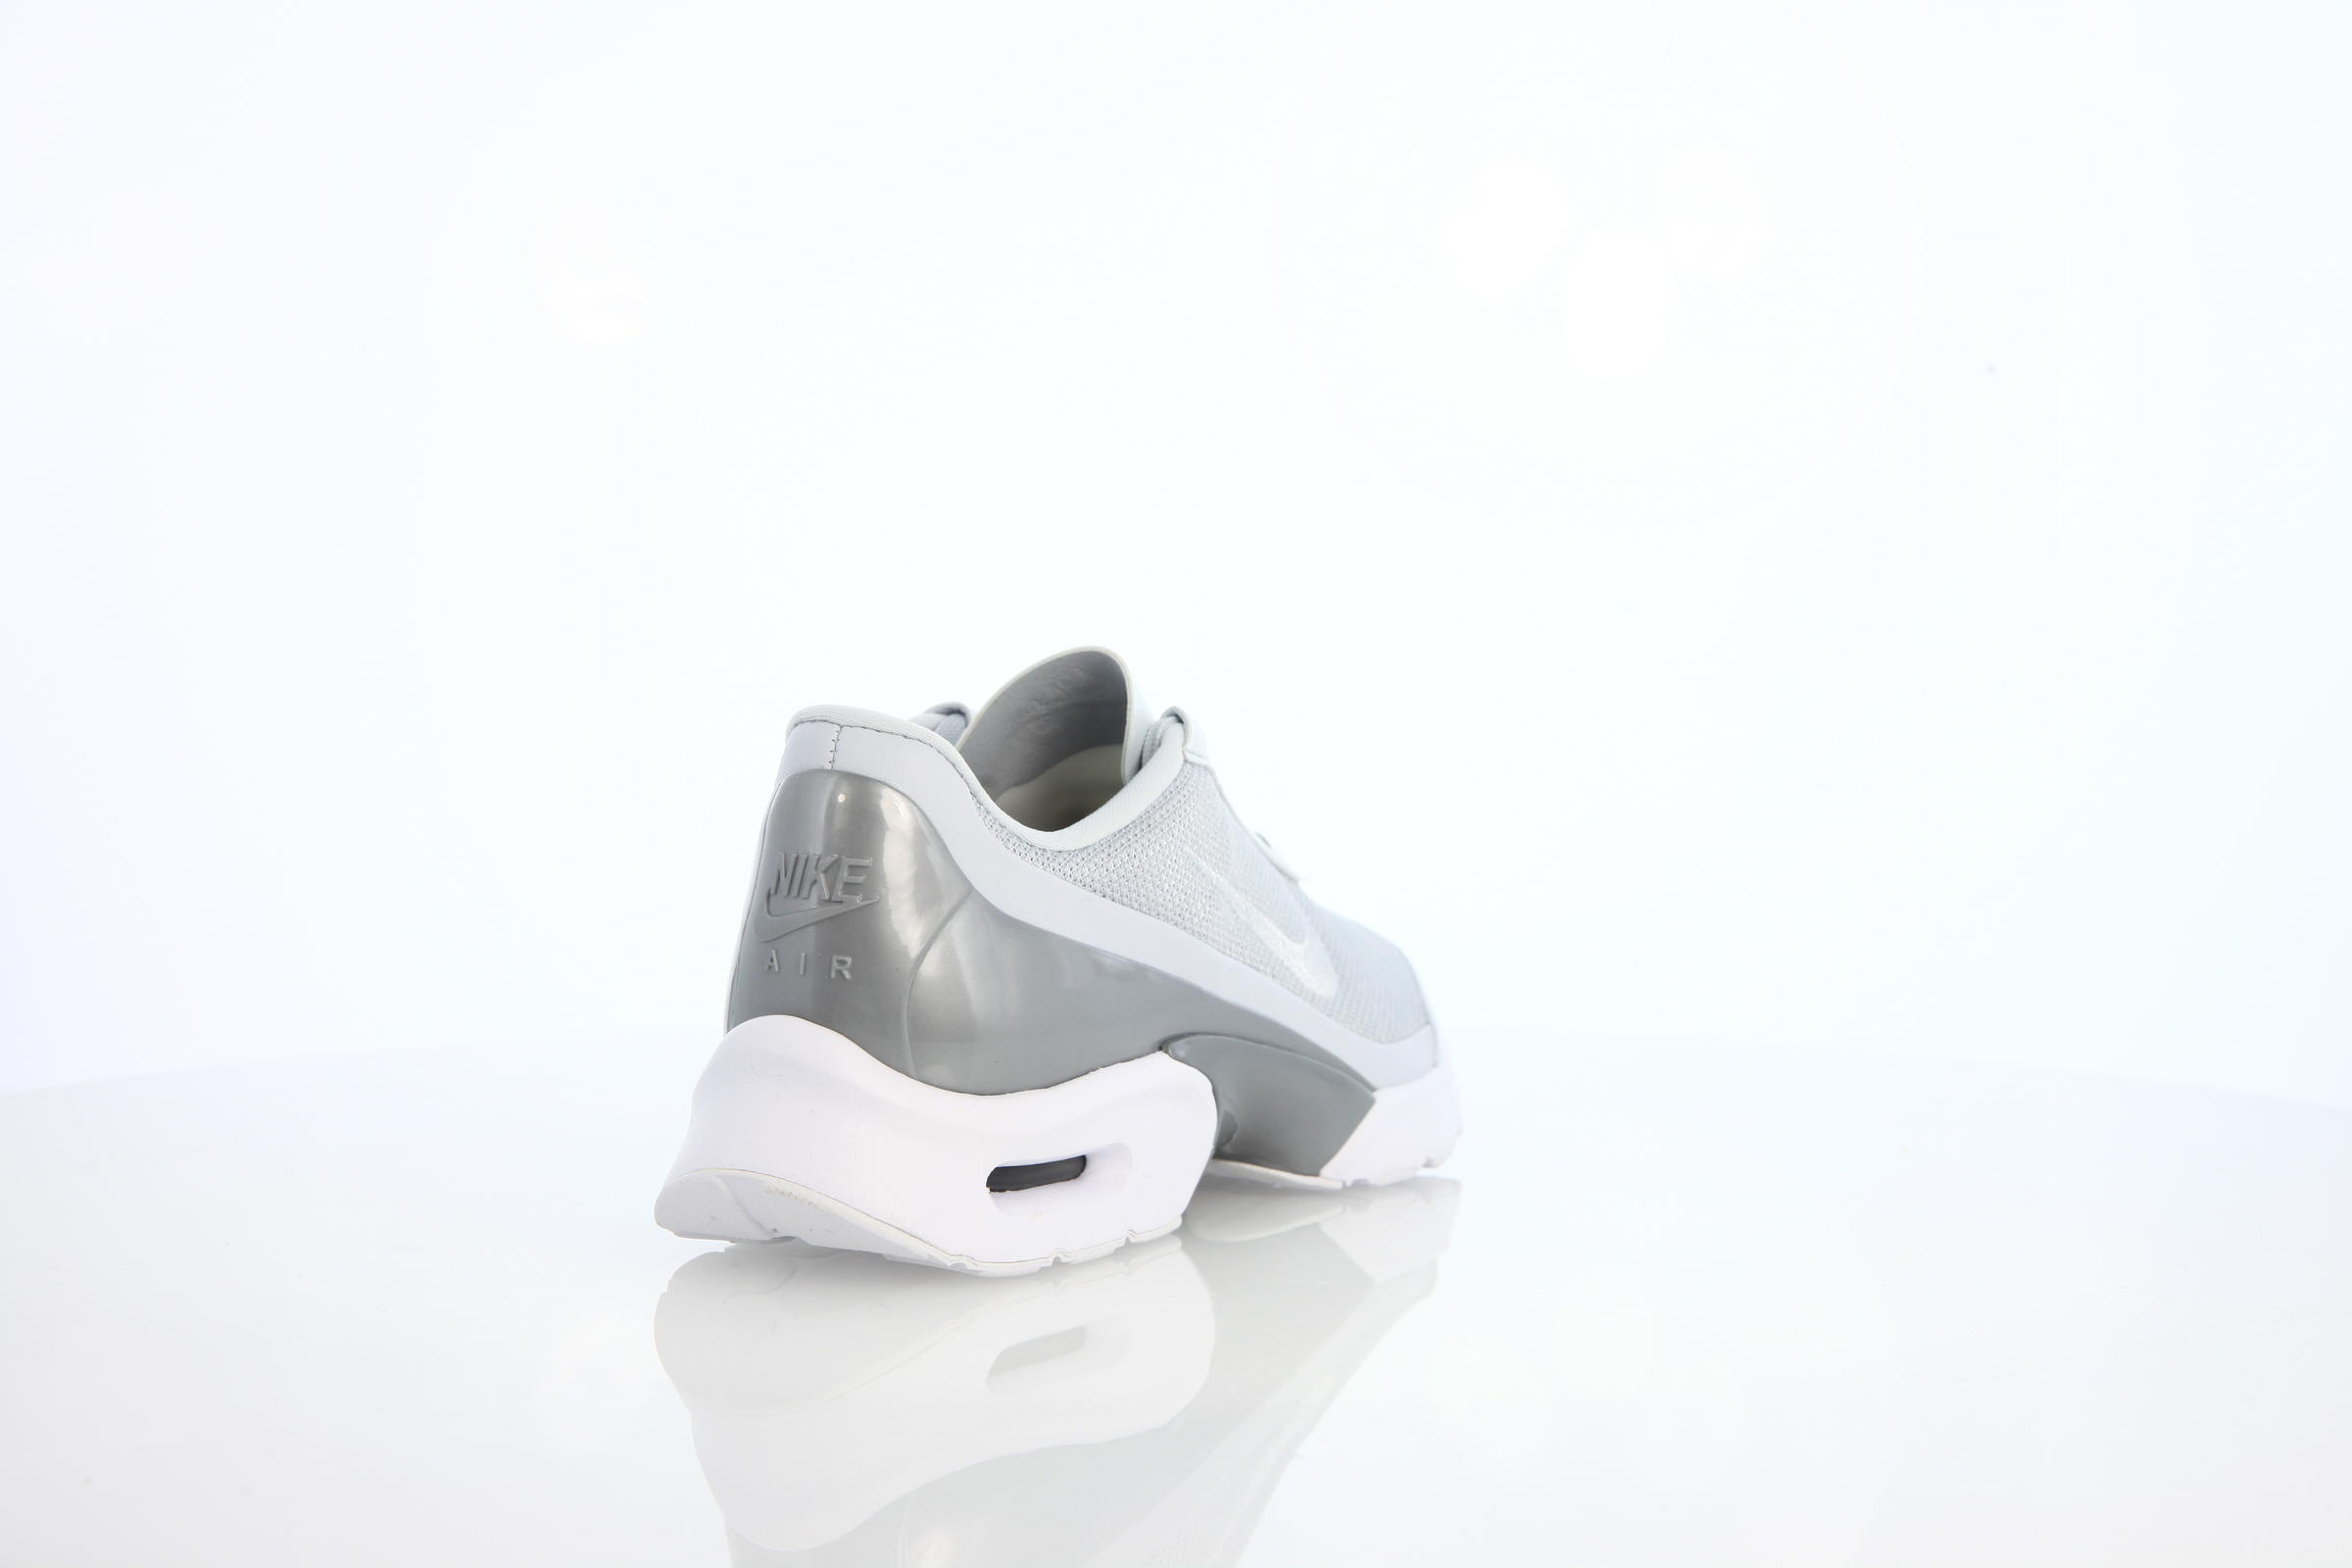 Nike Wmns Air Max Jewell Prm "Pure Platinum"